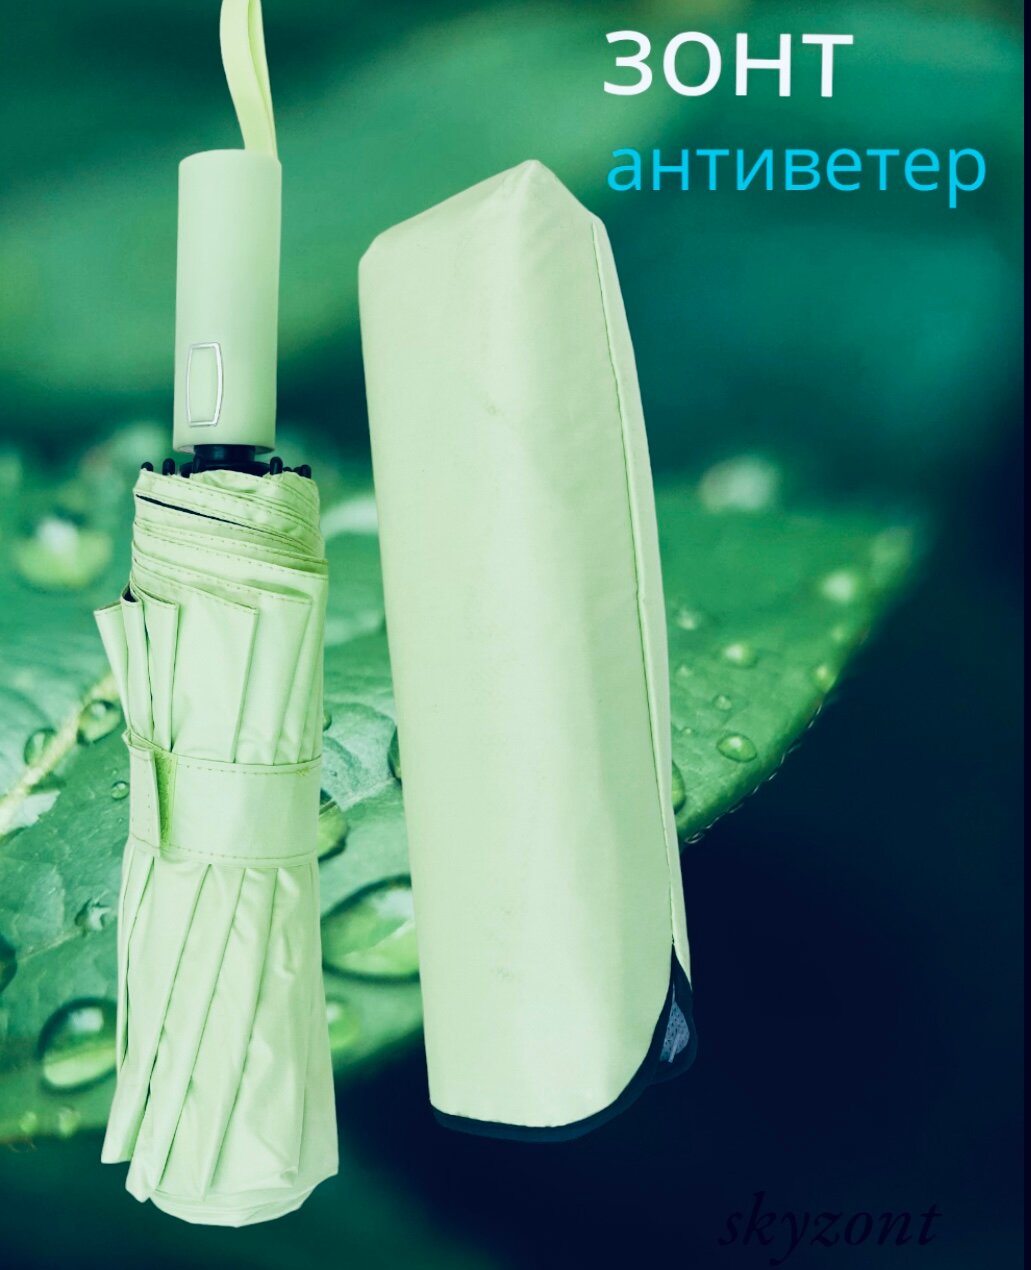 Мини-зонт зеленый